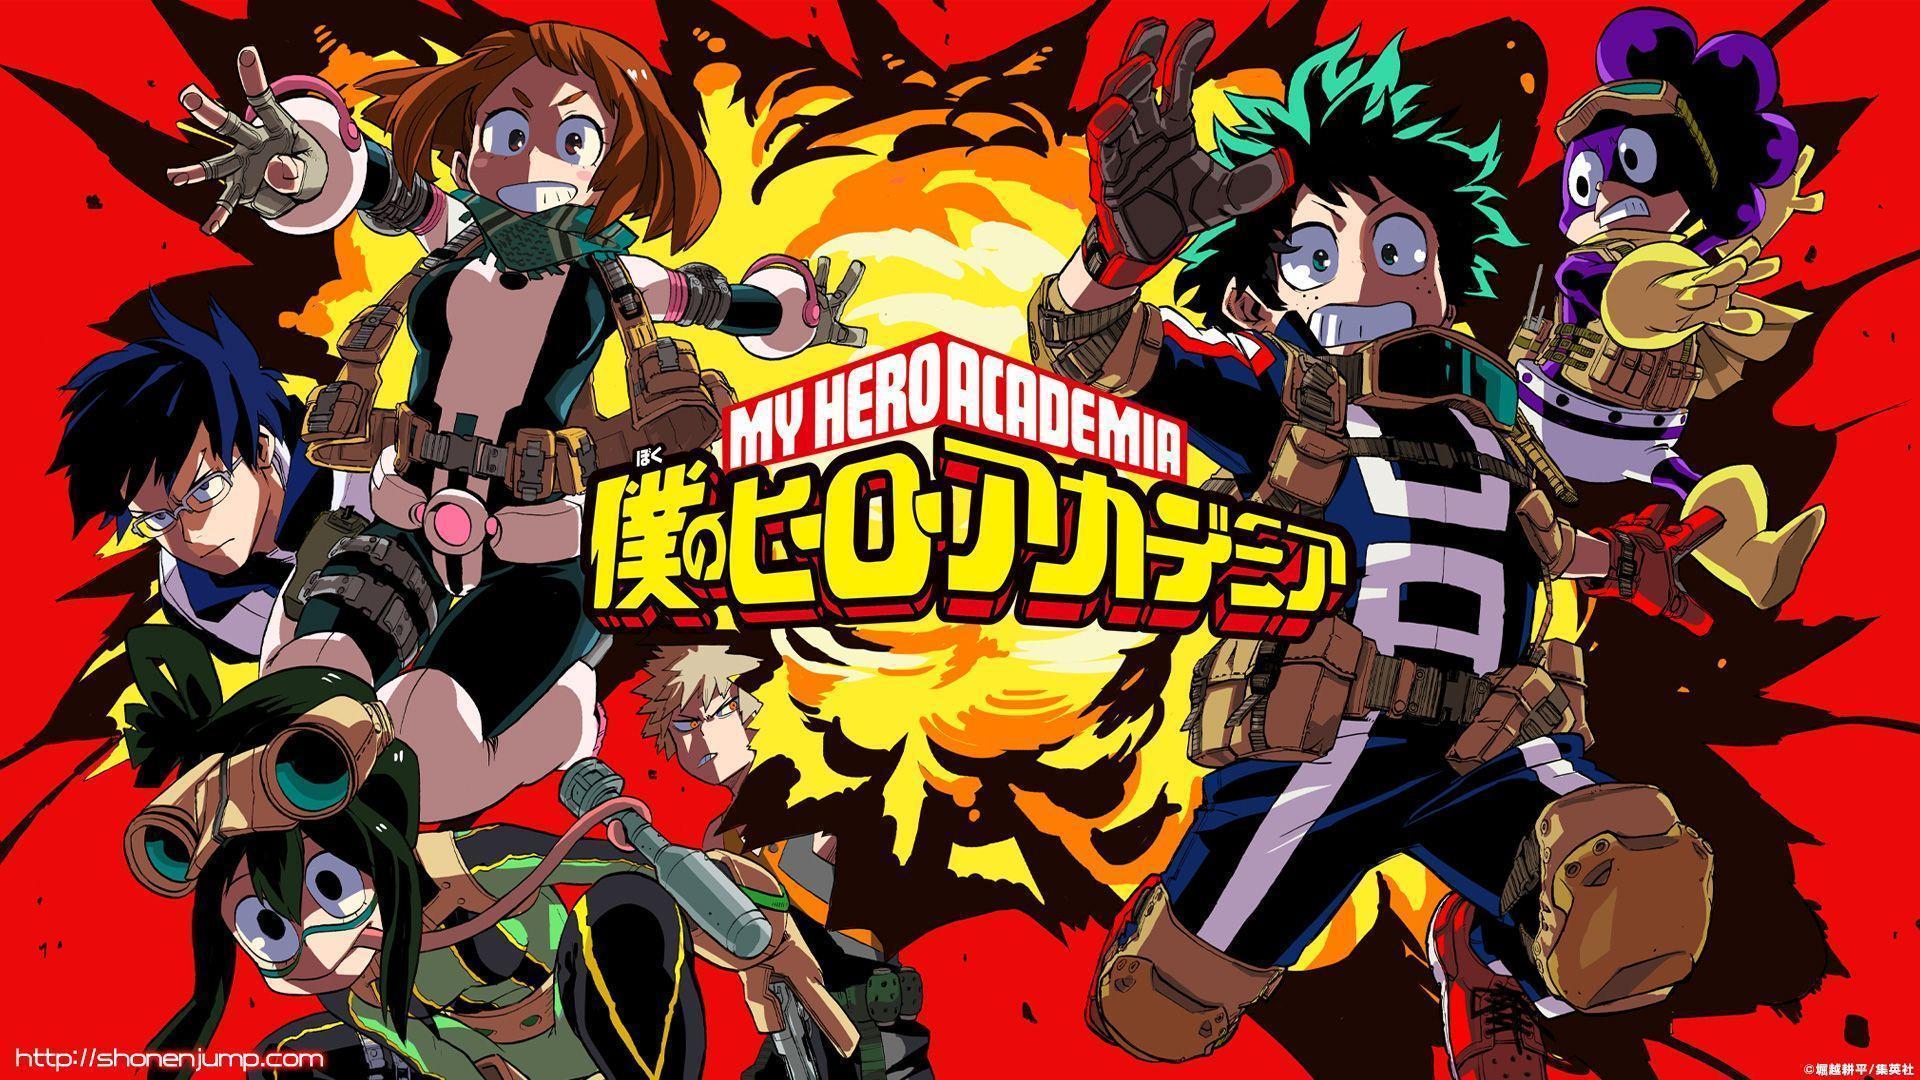 Terceira temporada de Boku no Hero Academia chegará em abril de 2018